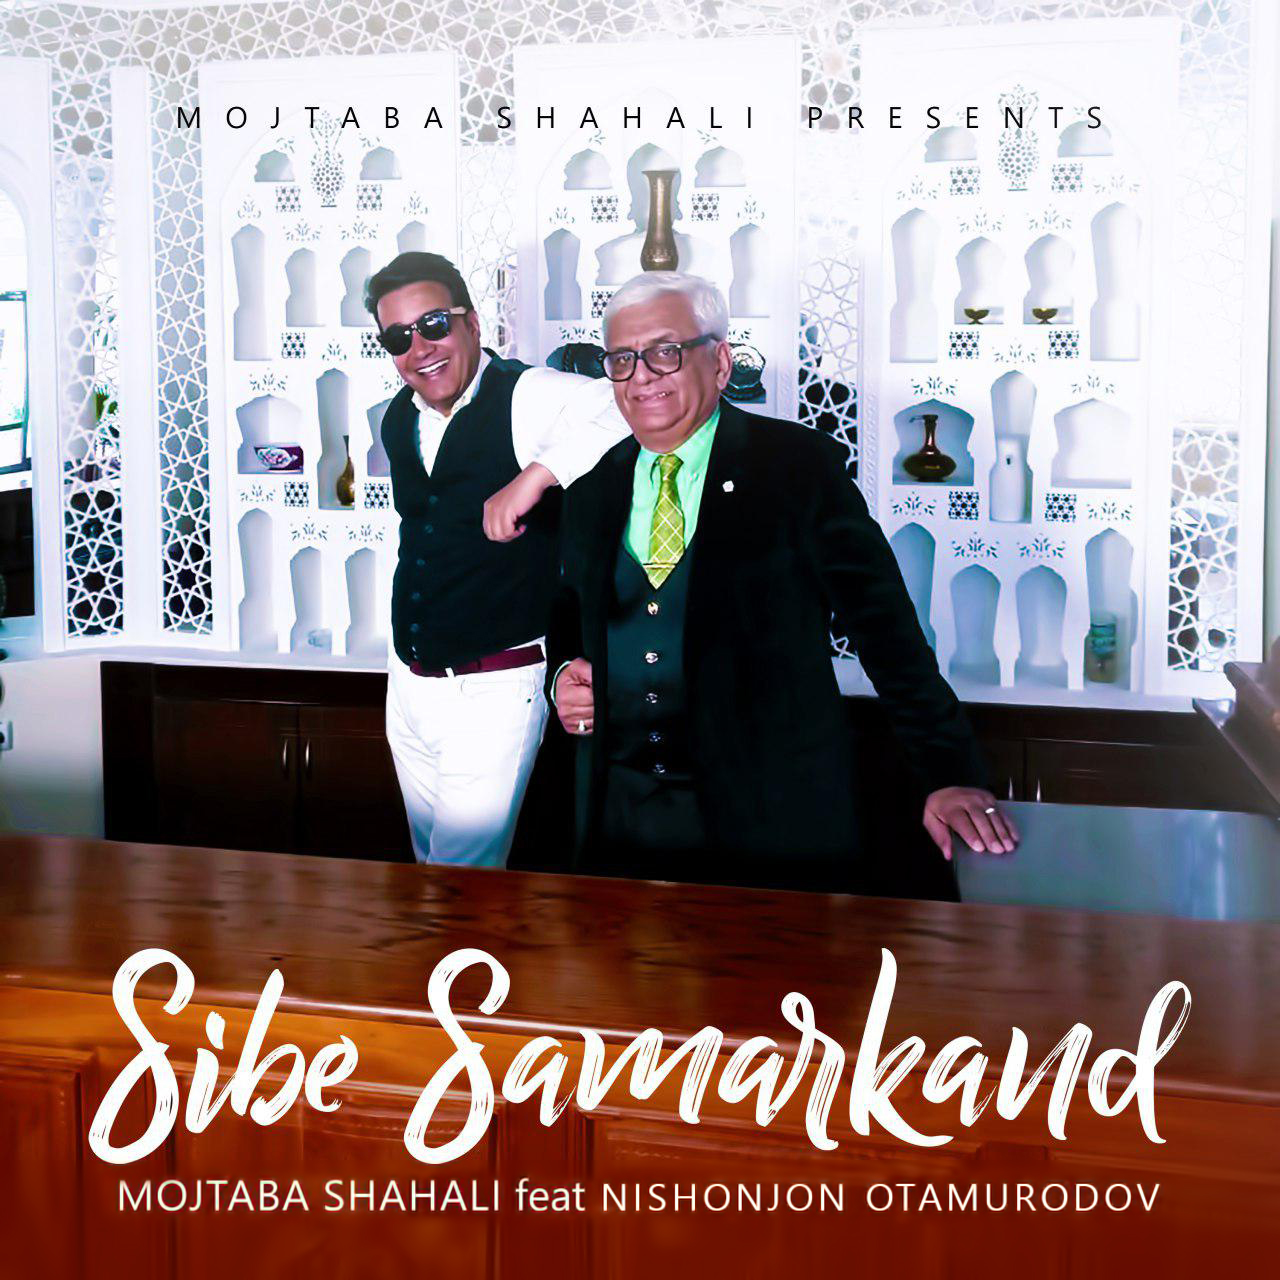  دانلود آهنگ جدید مجتبی شاه علی و  Nishonjon Otamurodov - سیب سمرقند | Download New Music By Mojtaba Shahali - Sibe Samarkand Ft. Nishonjon Otamurodov